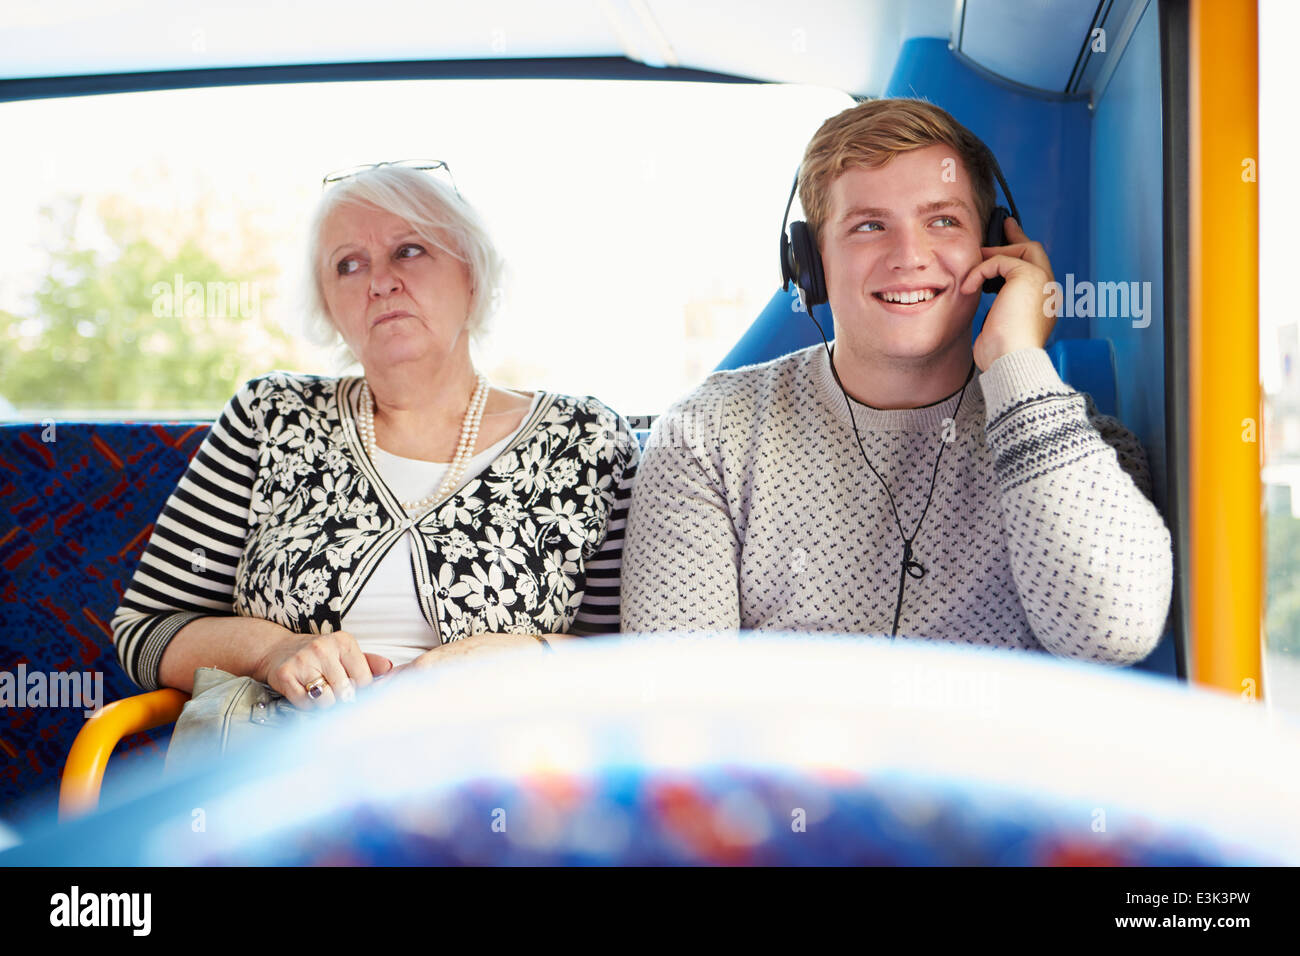 Homme inquiétant les passagers des bus avec de la musique forte Banque D'Images